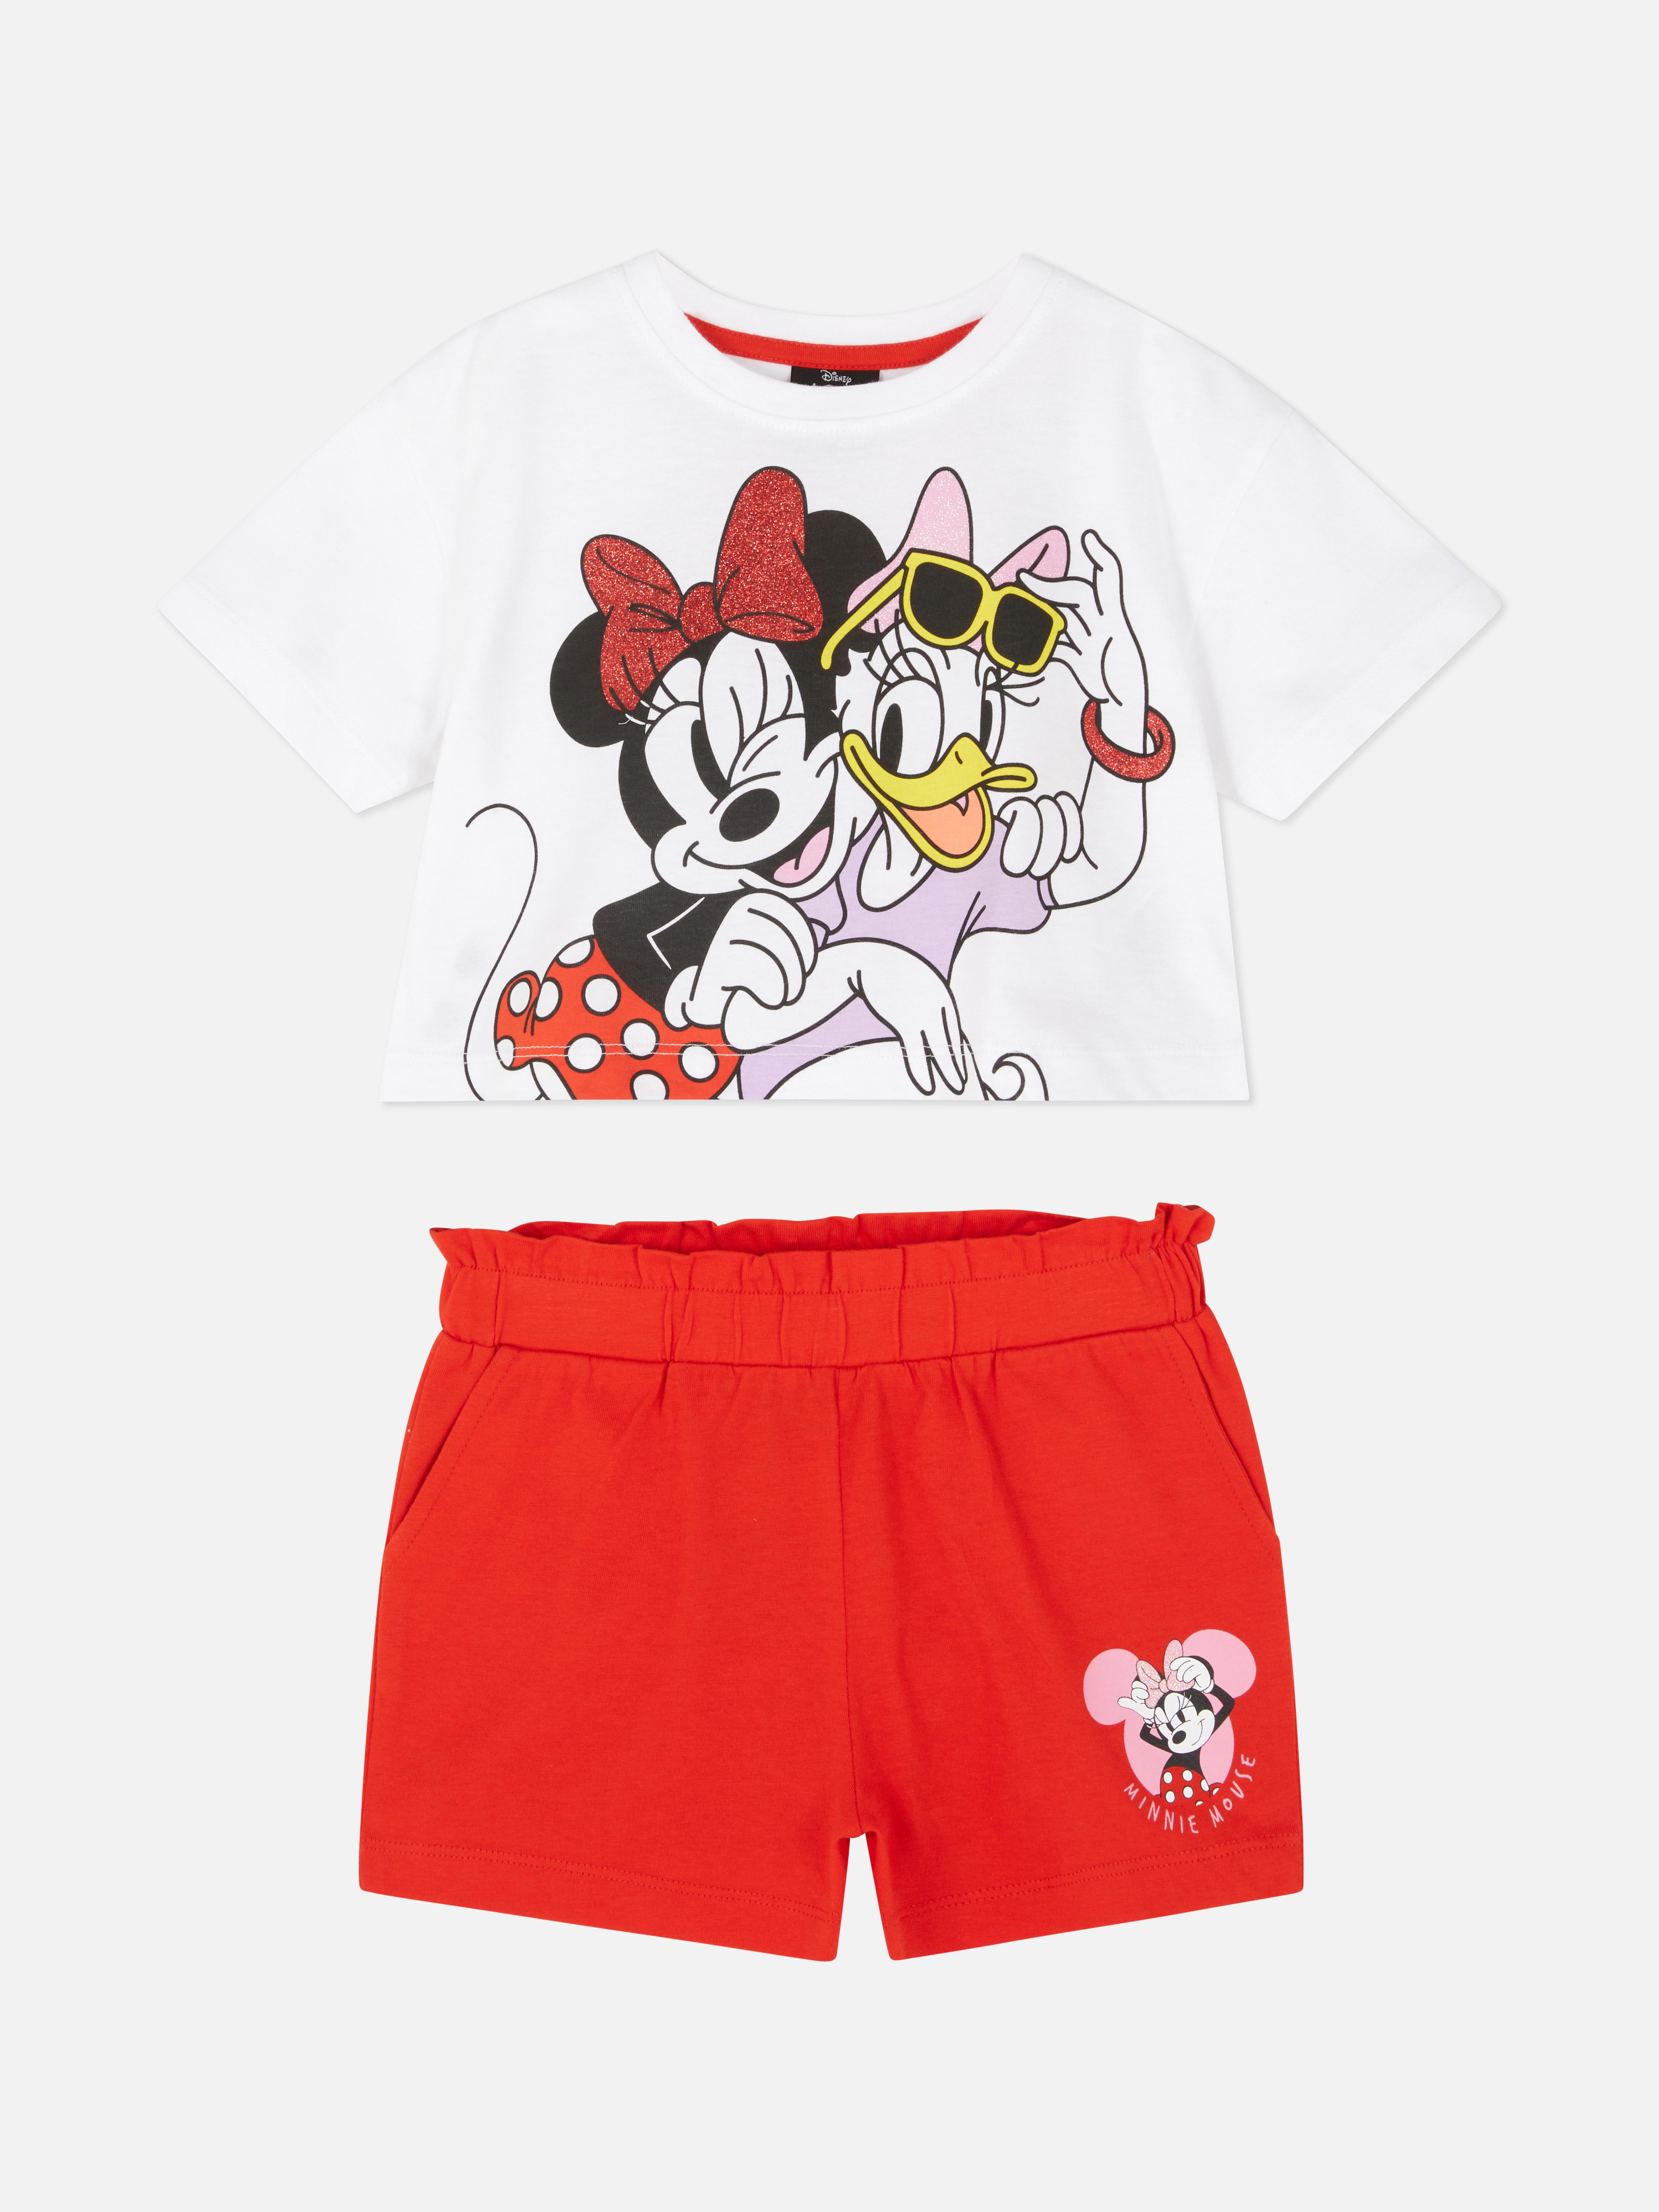 „Disney Minnie Maus und Daisy Duck“ Top und Shorts